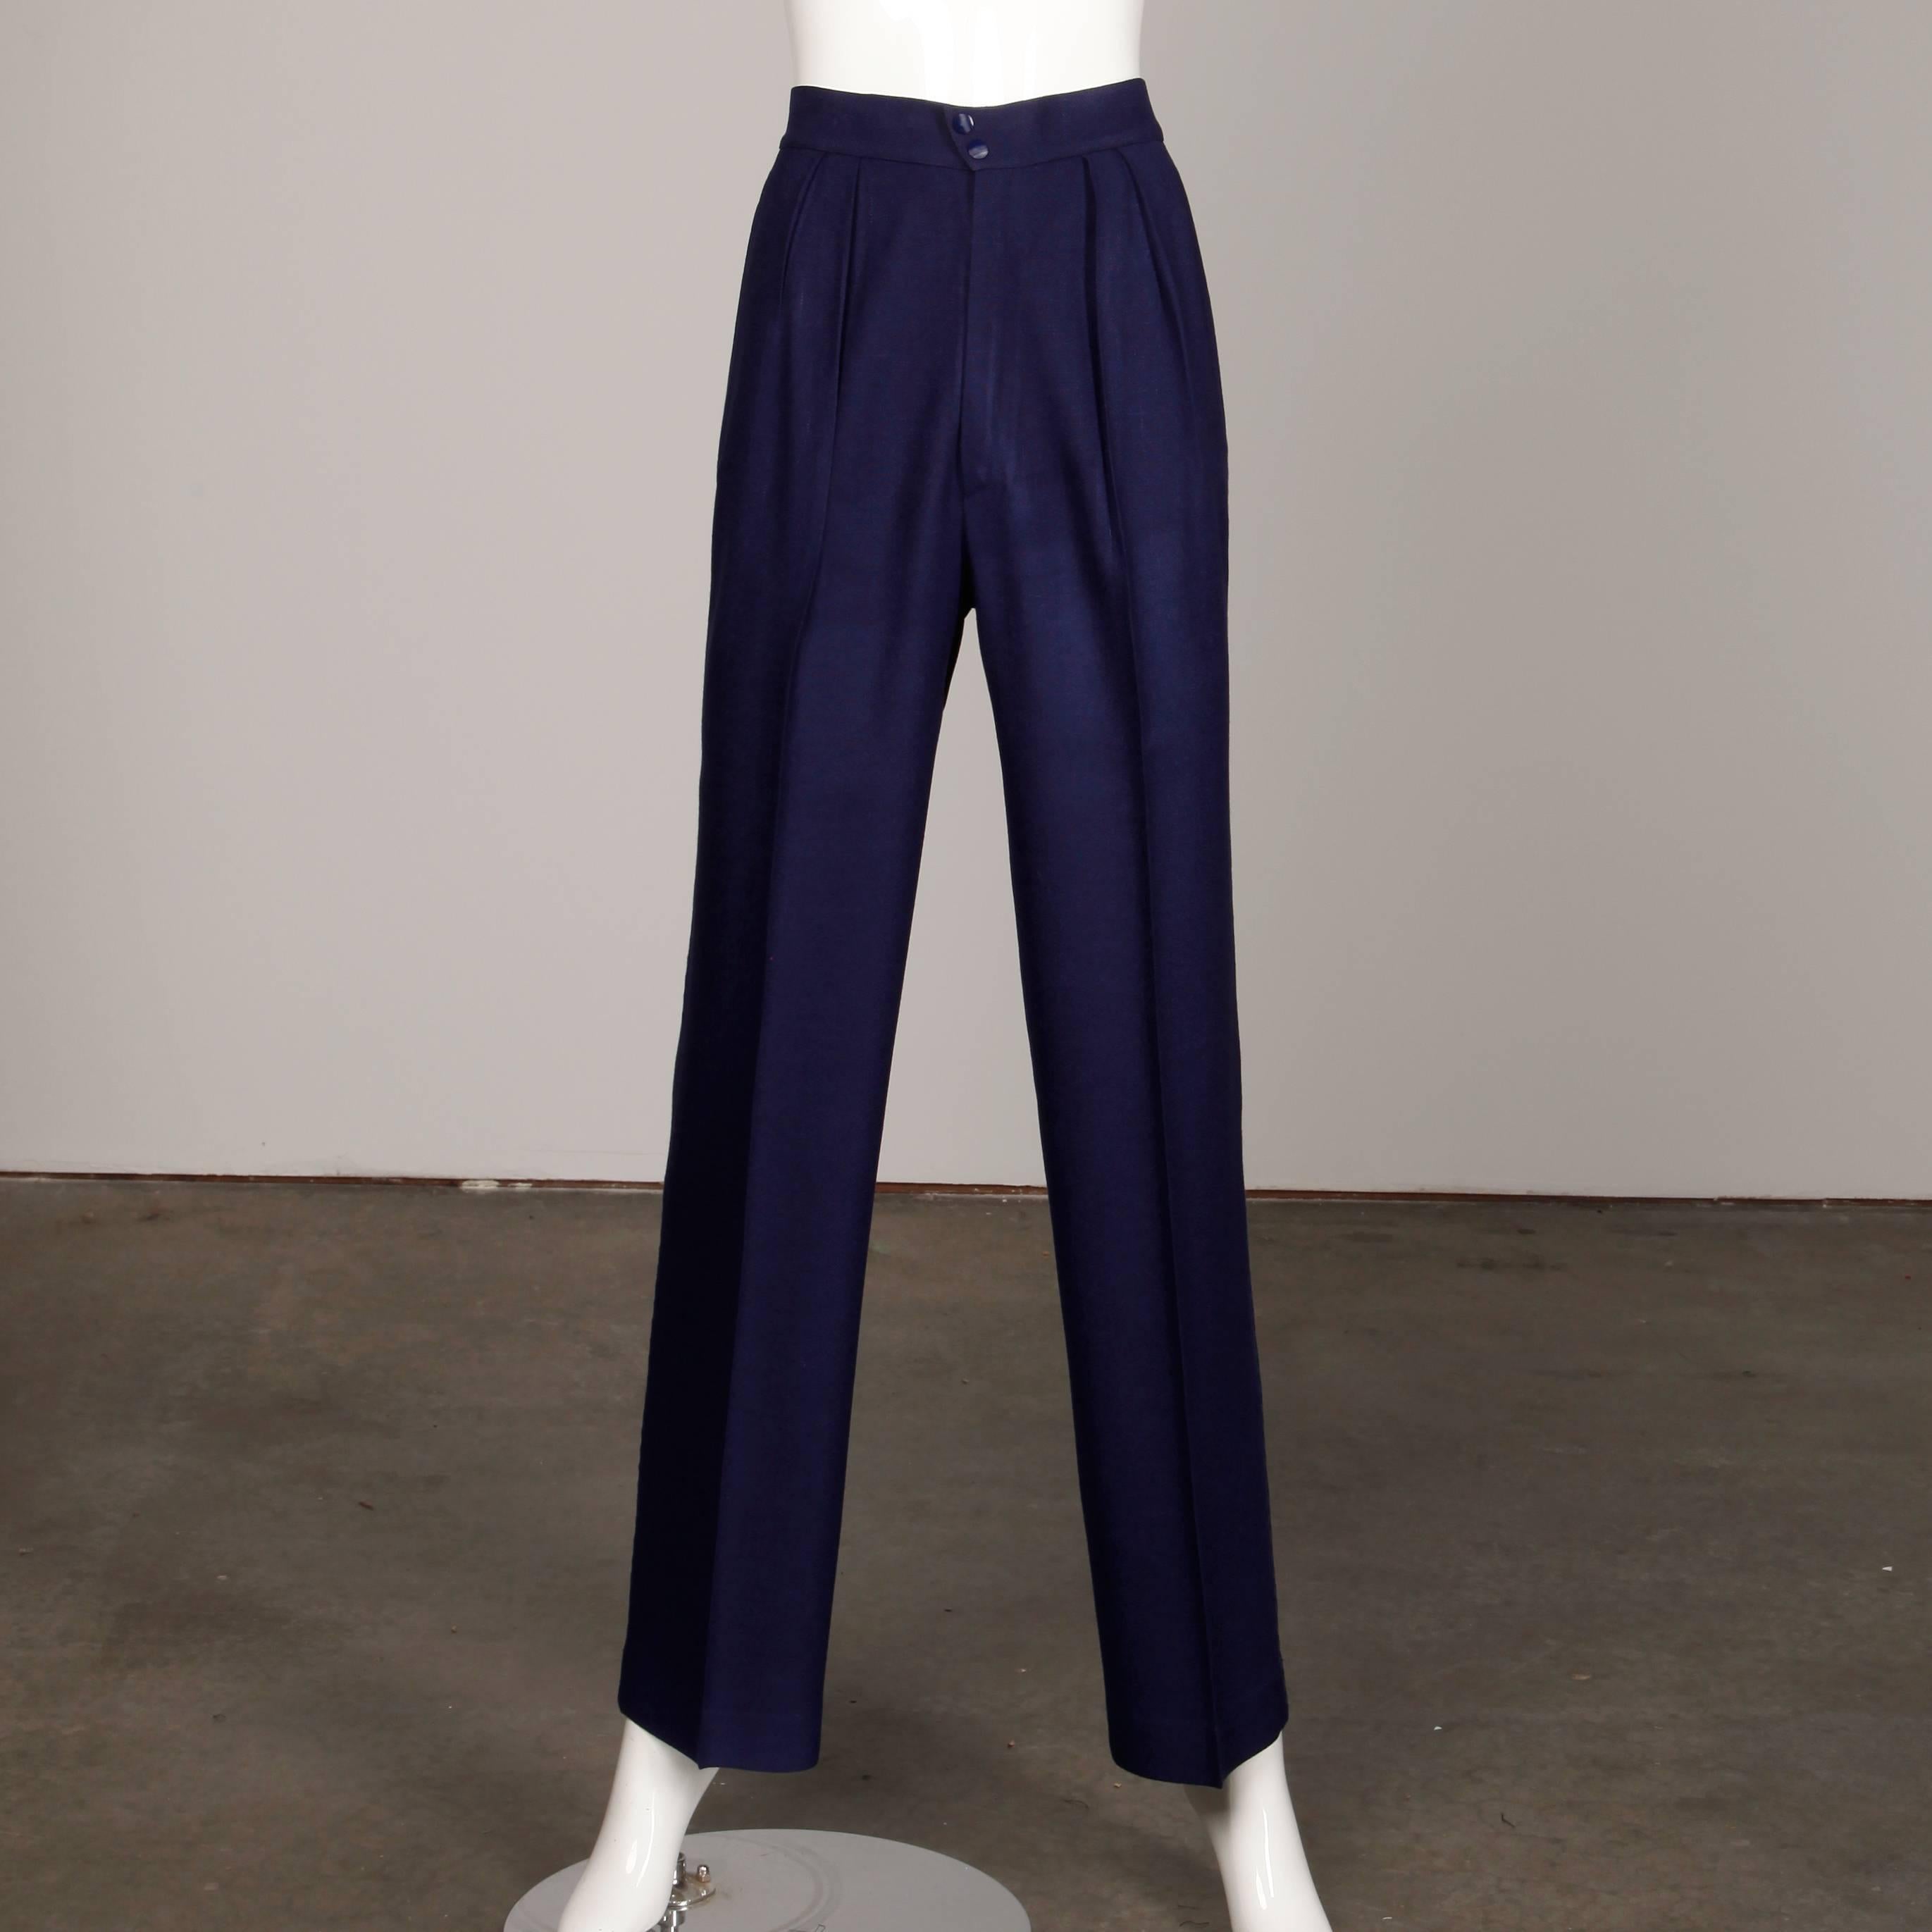 Black 1980s Thierry Mugler Vintage Navy Blue Cut Out Jacket + Pants Suit Ensemble